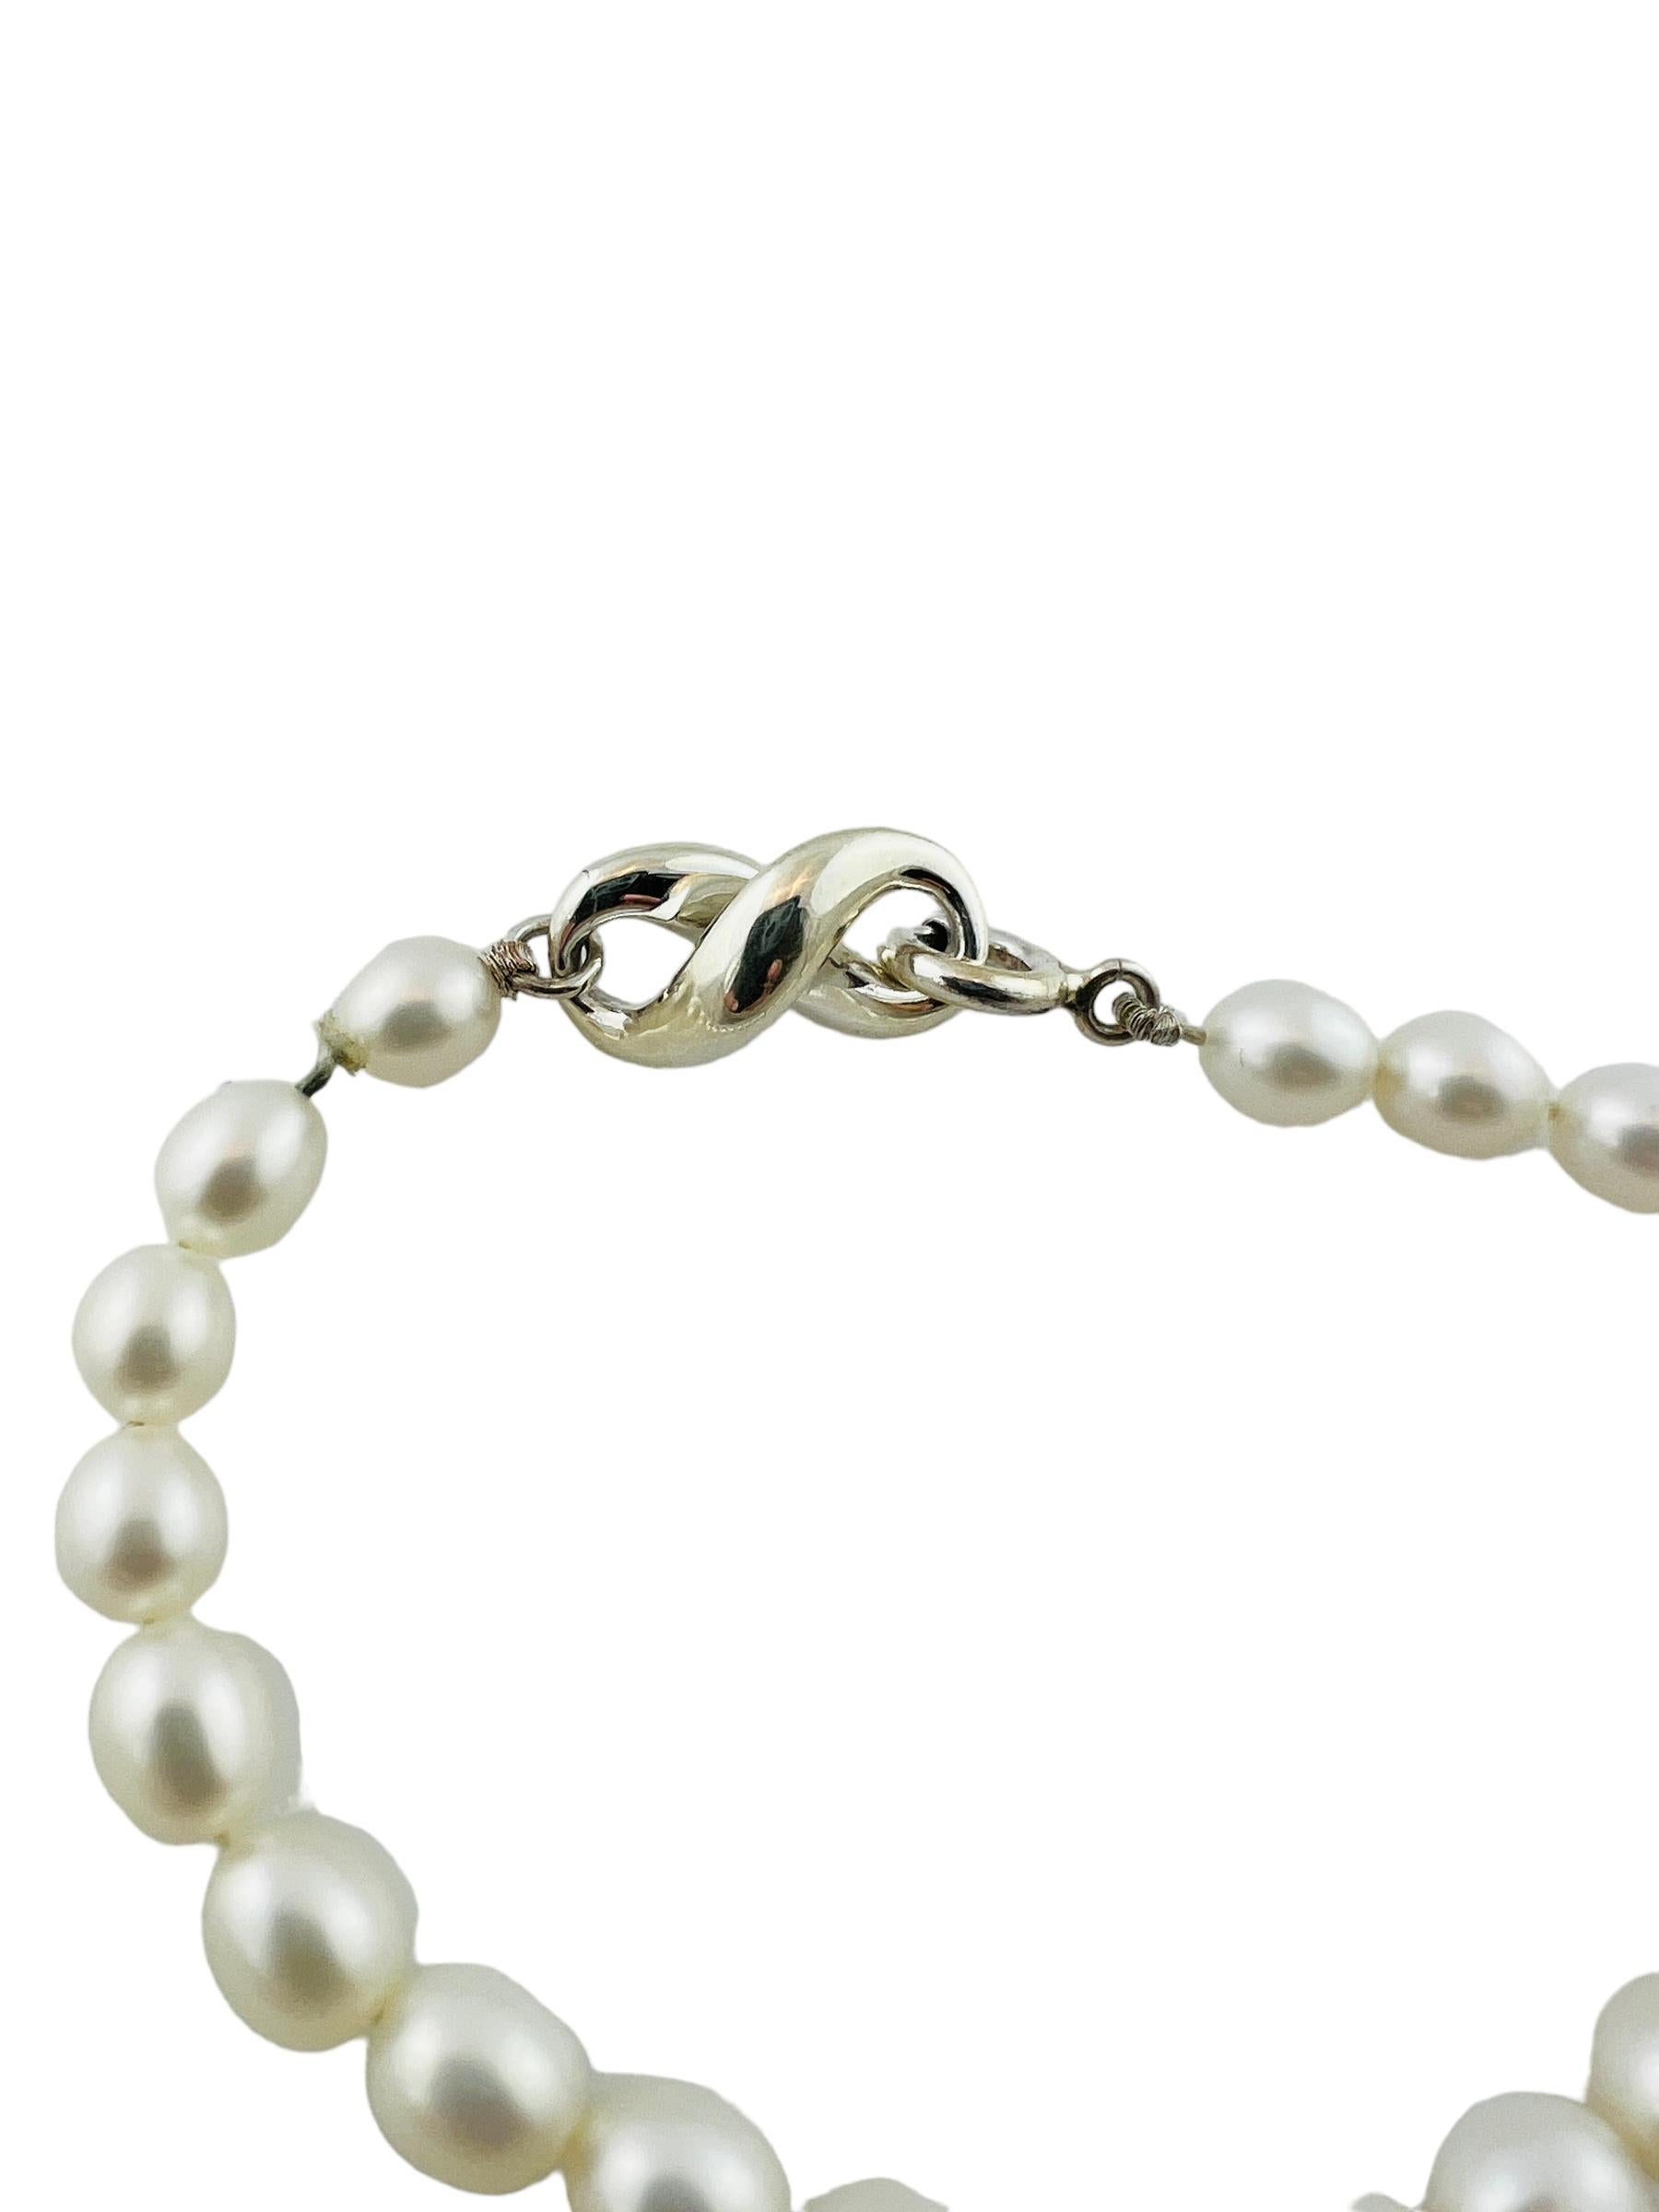 Bead 1999 Tiffany & Co Sterling Silver Infinity Figure 8 Pearl Bracelet #15425